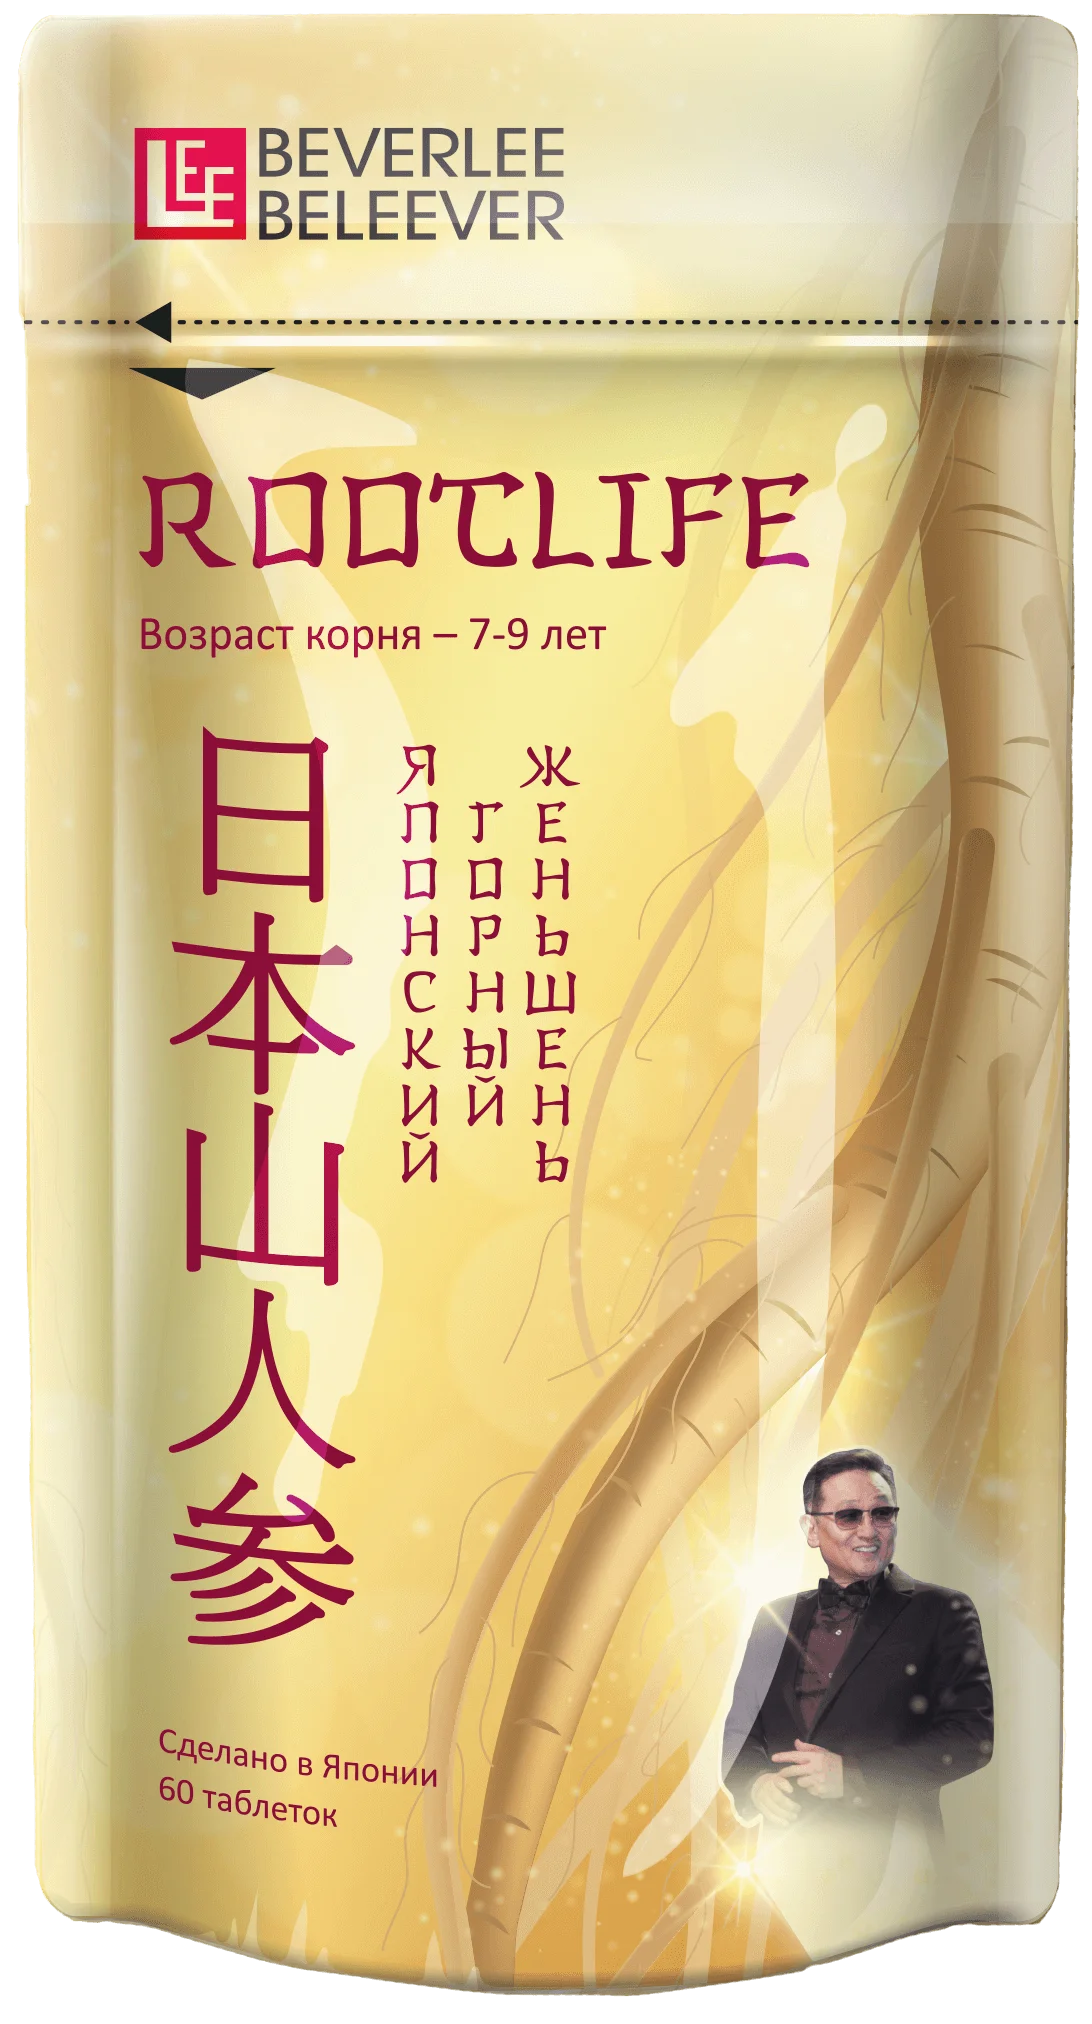 Японский горный женьшень, продукт RootLife (РутЛайф), Изготовитель: Shiseido Pharmaceutical Co., Ltd., Япония. Купить в Челябинске по официальной цене компании BEVERLee — beLEEver (Беверли - Беливер).